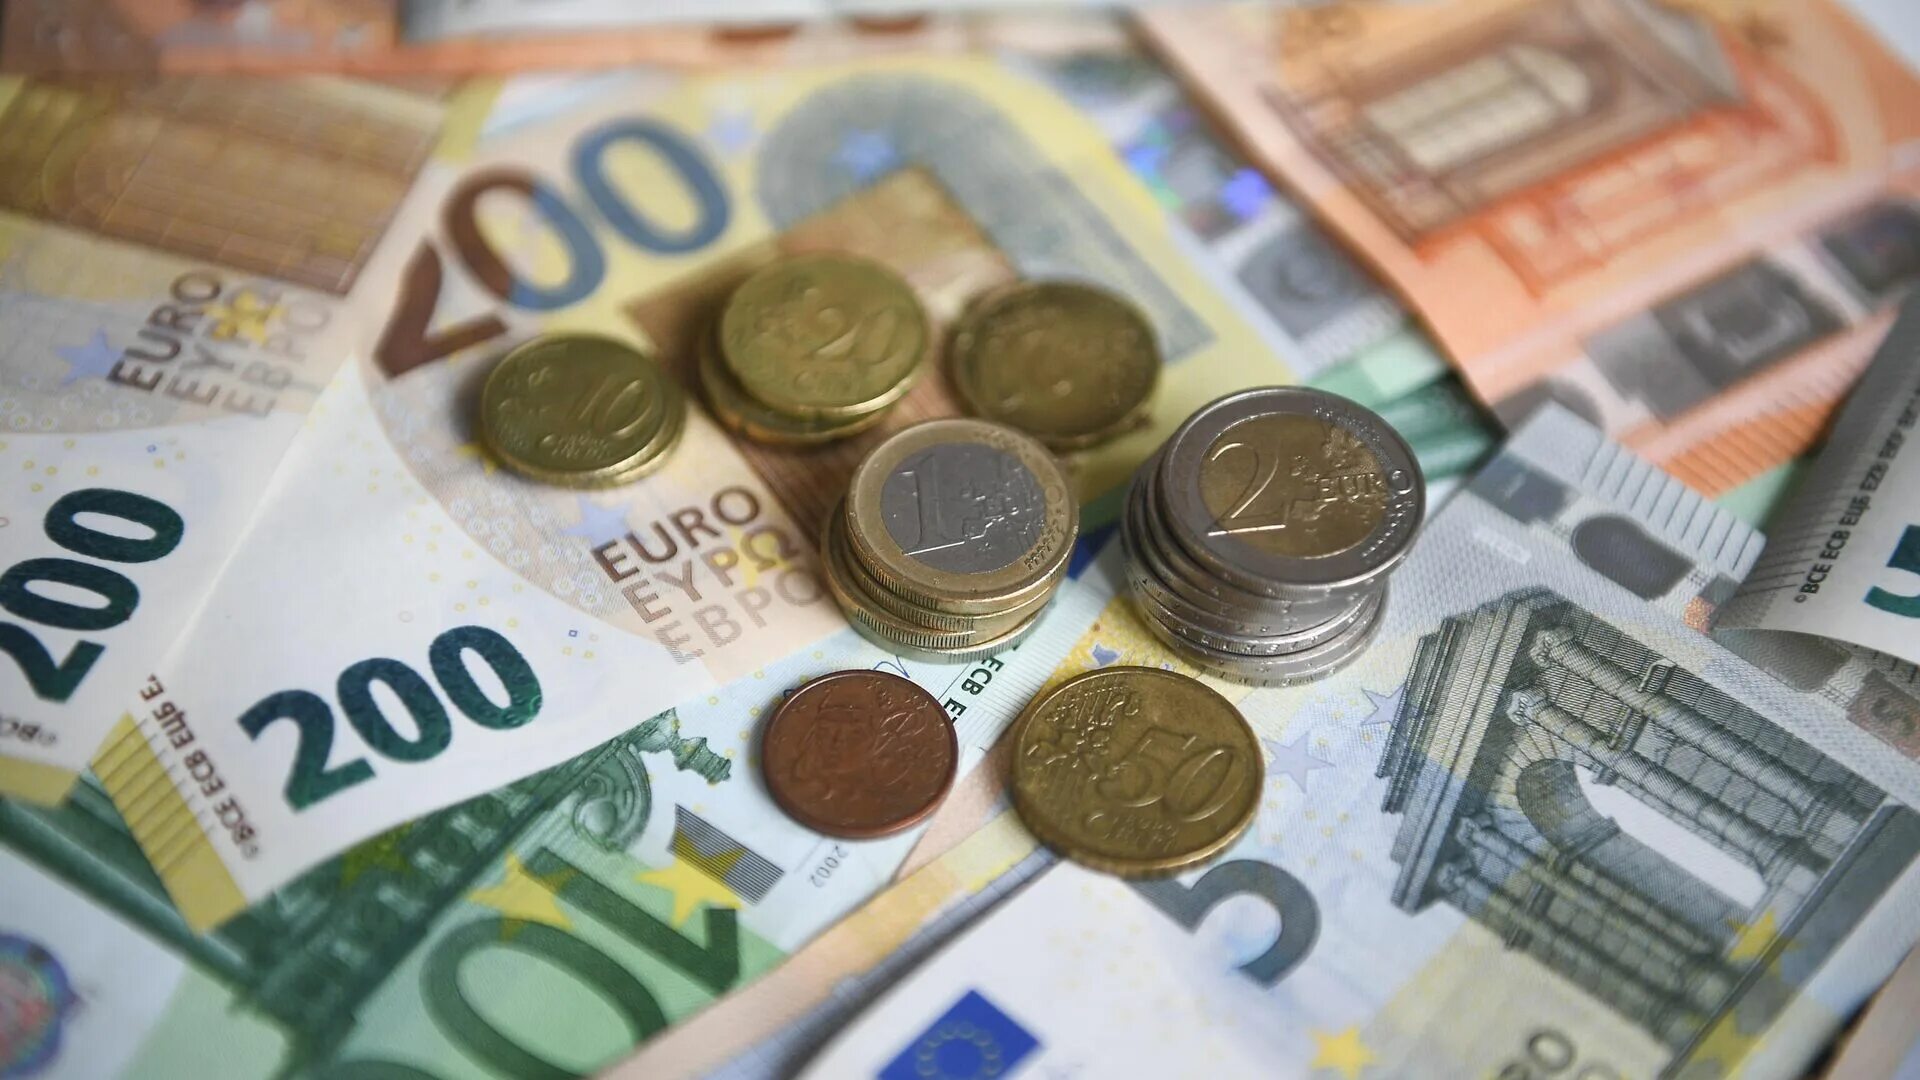 Евро. Доллар и евро. Наличные деньги. Евро фото.